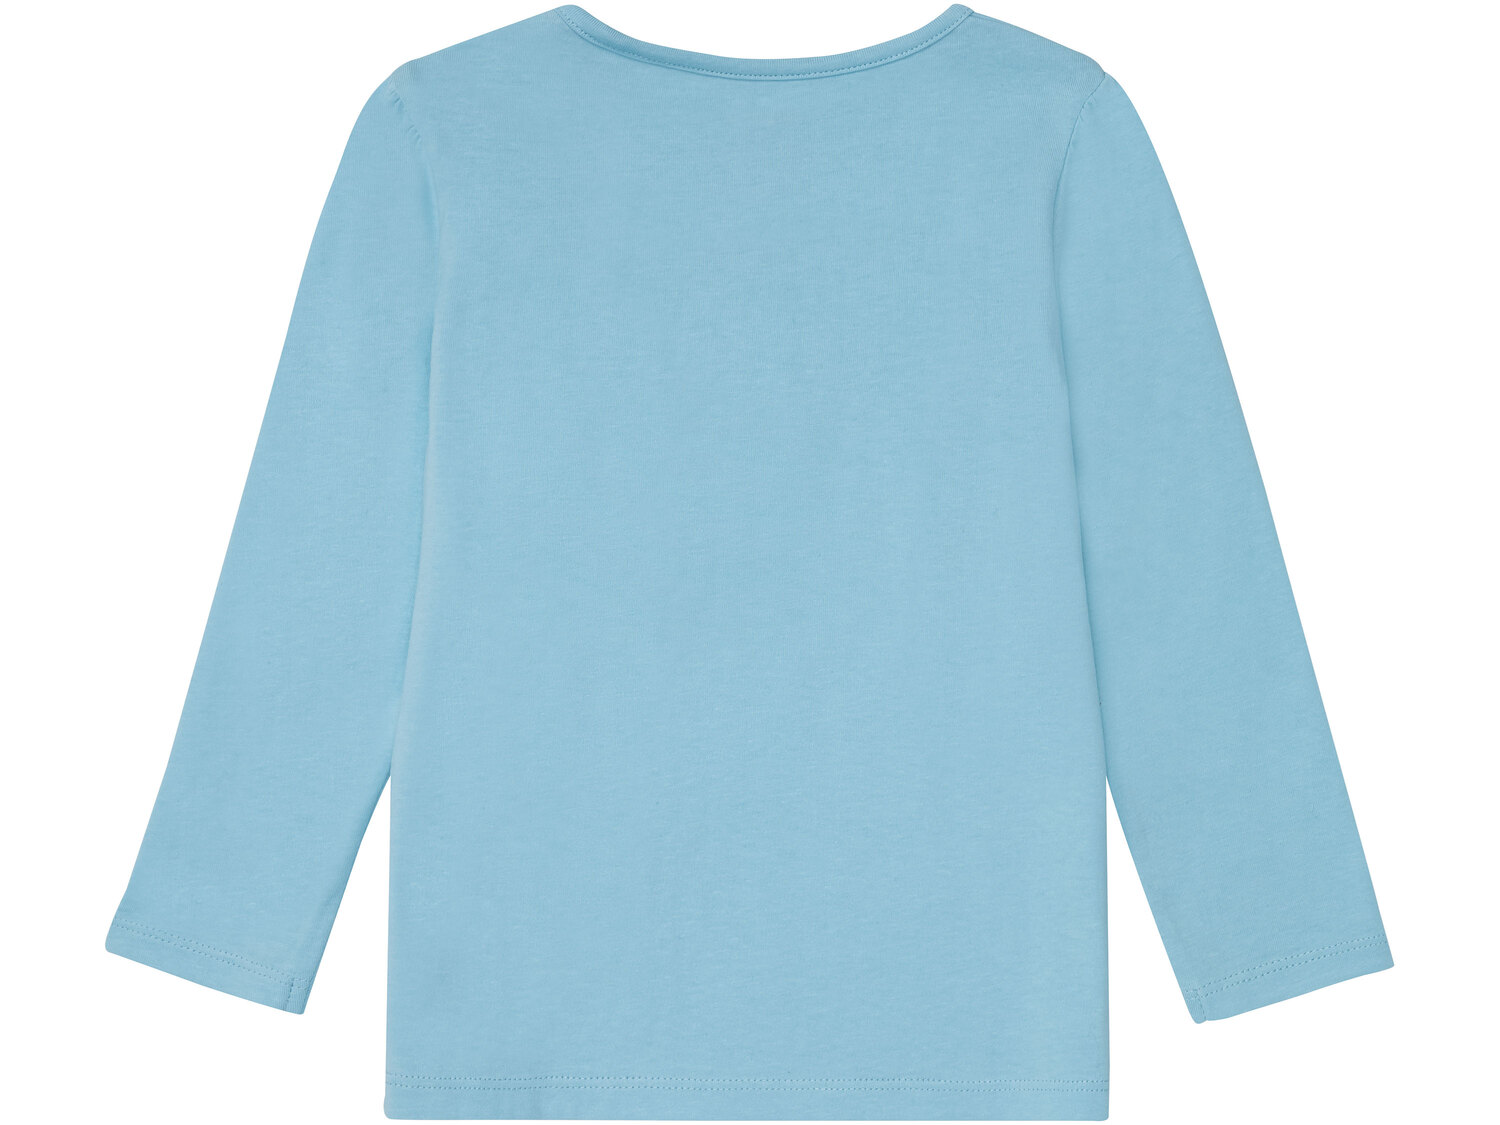 Bluzka dziecięca z bawełny , cena 12,99 PLN 
- rozmiary: 86-116
- uroczy motyw ...